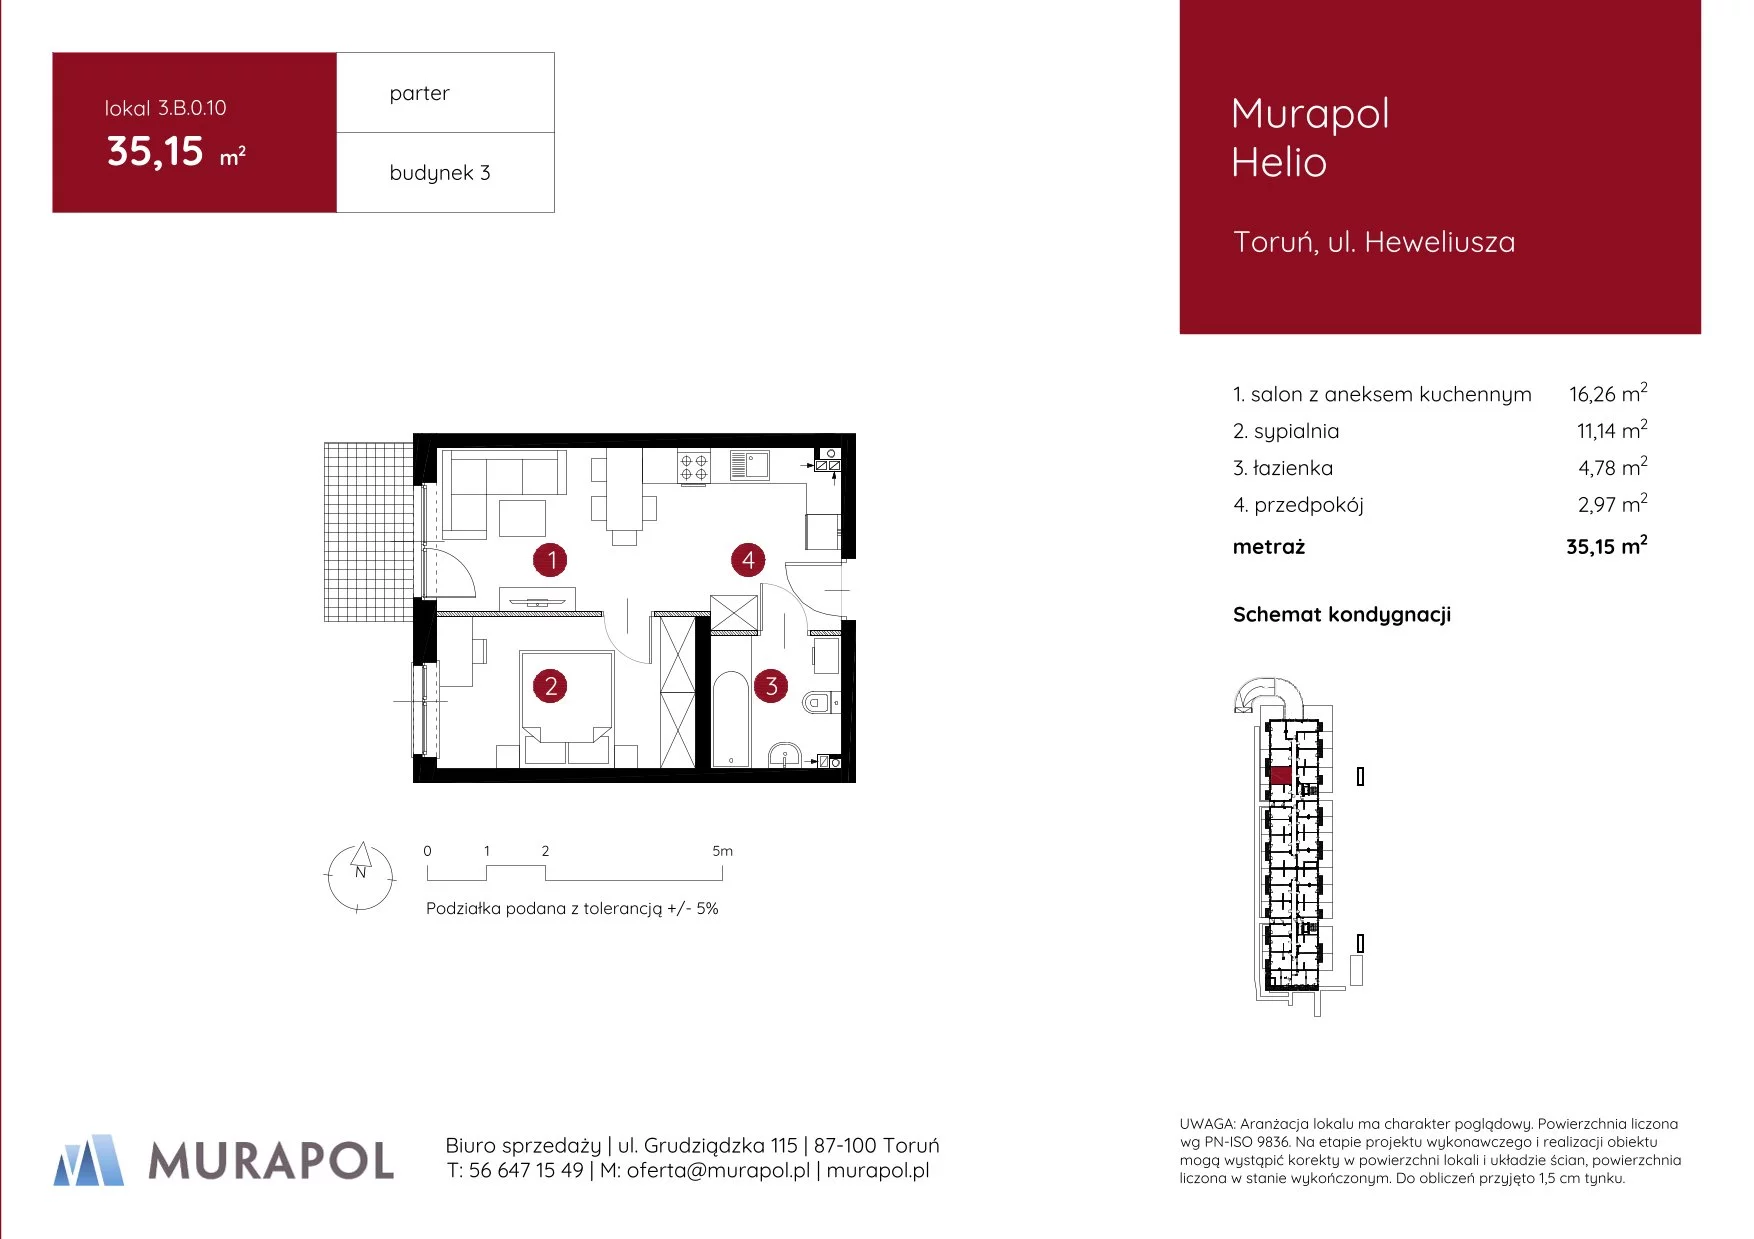 Mieszkanie 35,15 m², parter, oferta nr 3.B.0.10, Murapol Helio, Toruń, Wrzosy, JAR, ul. Heweliusza